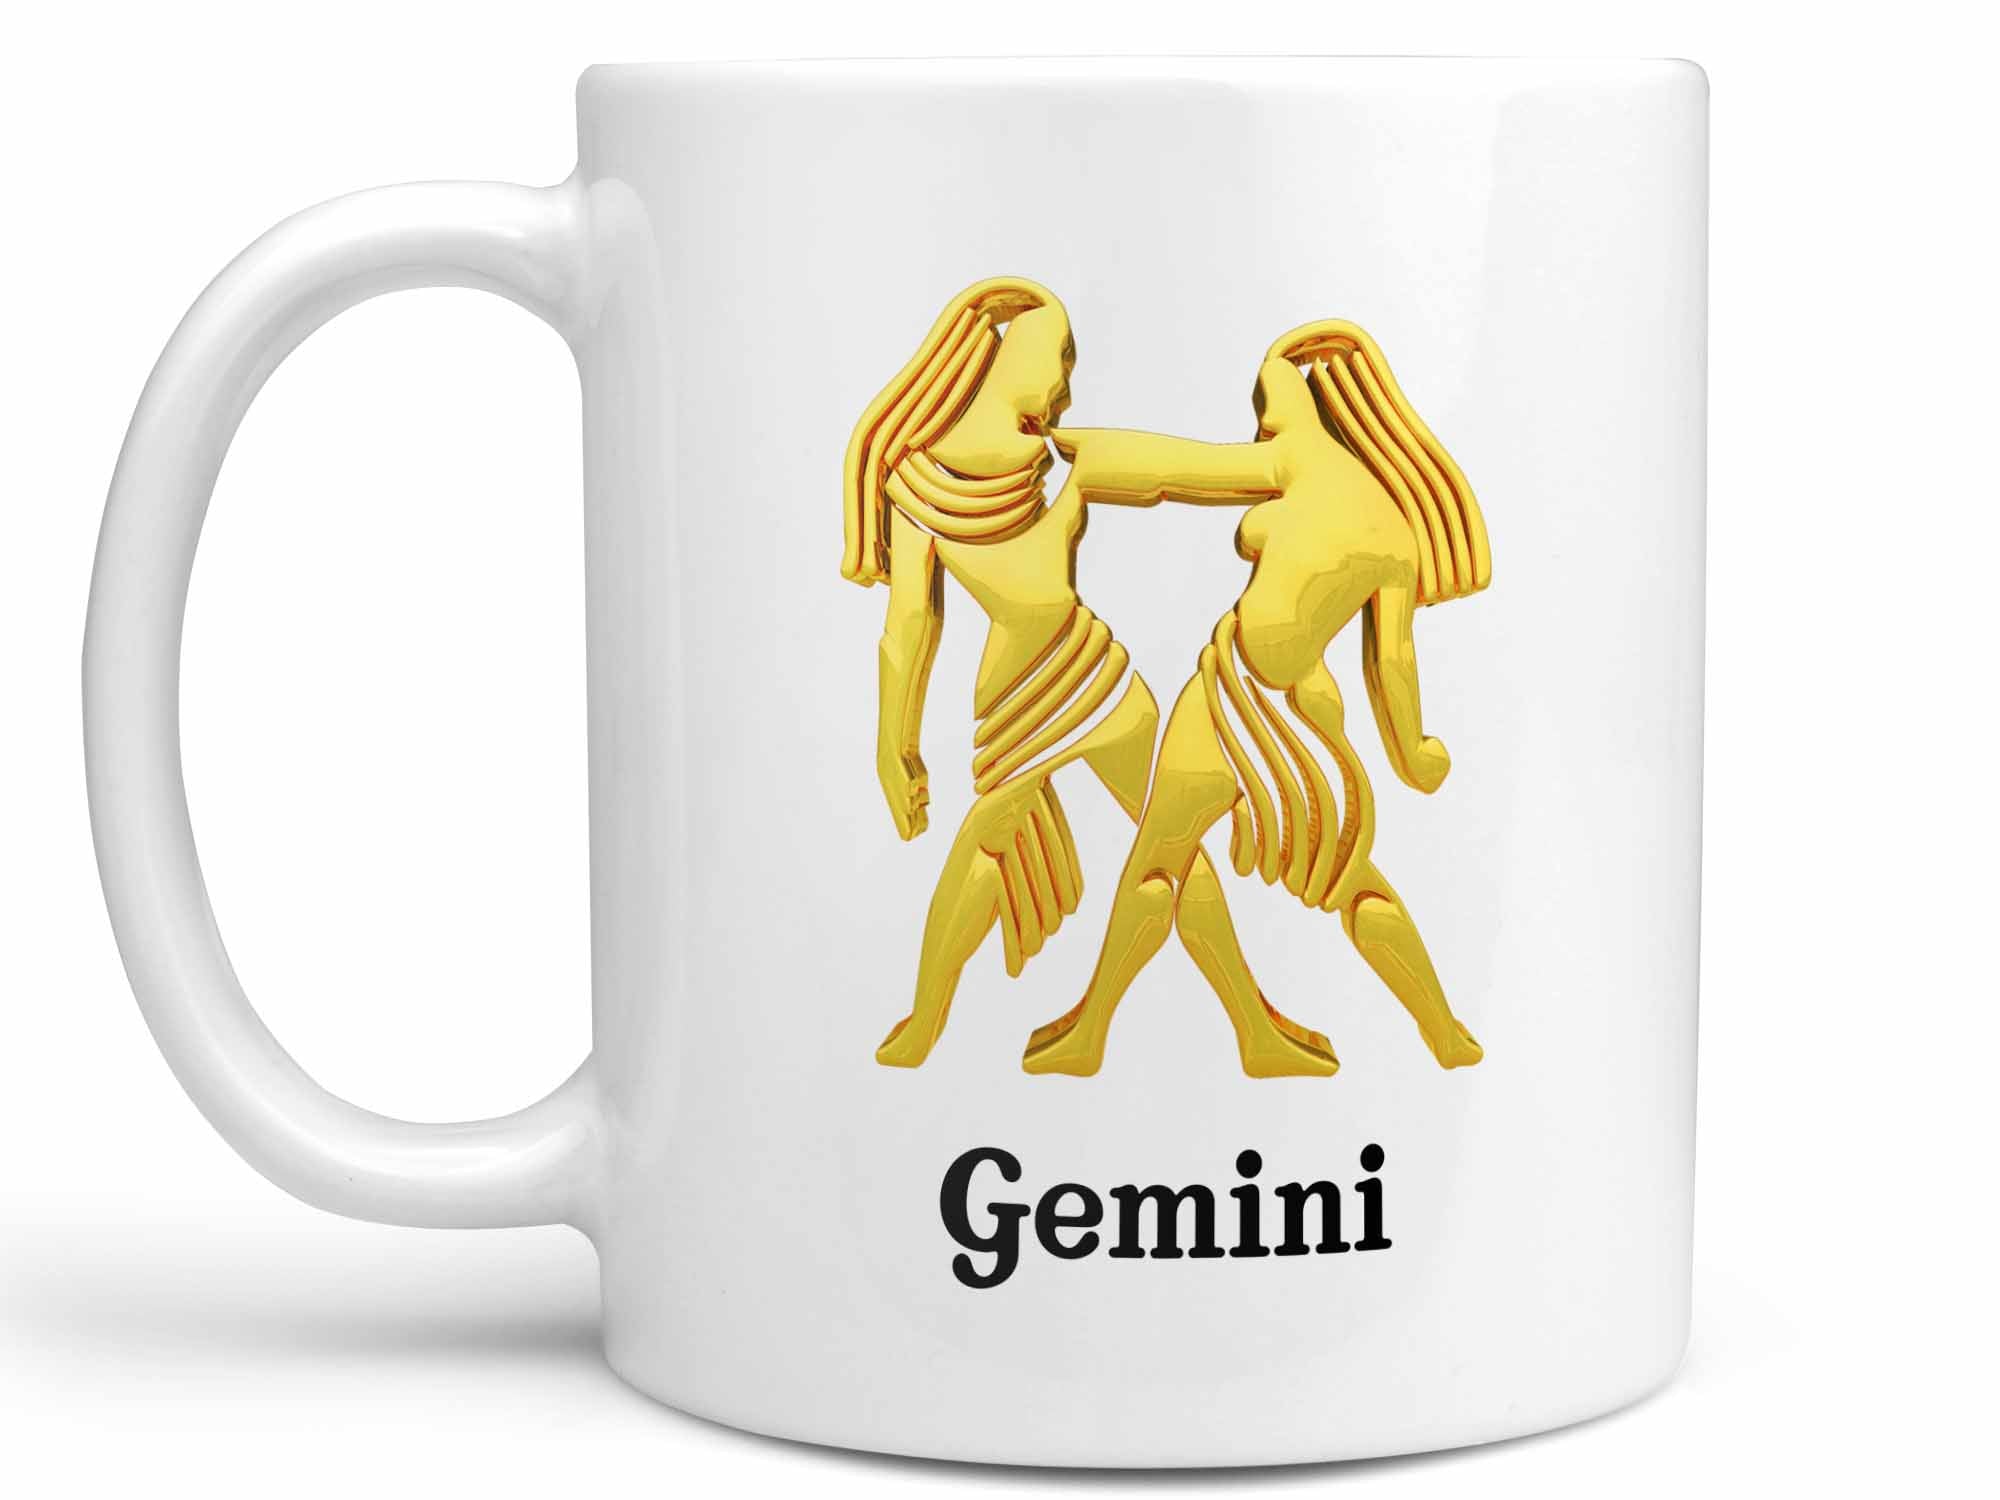 Gemini Gold Coffee Mug